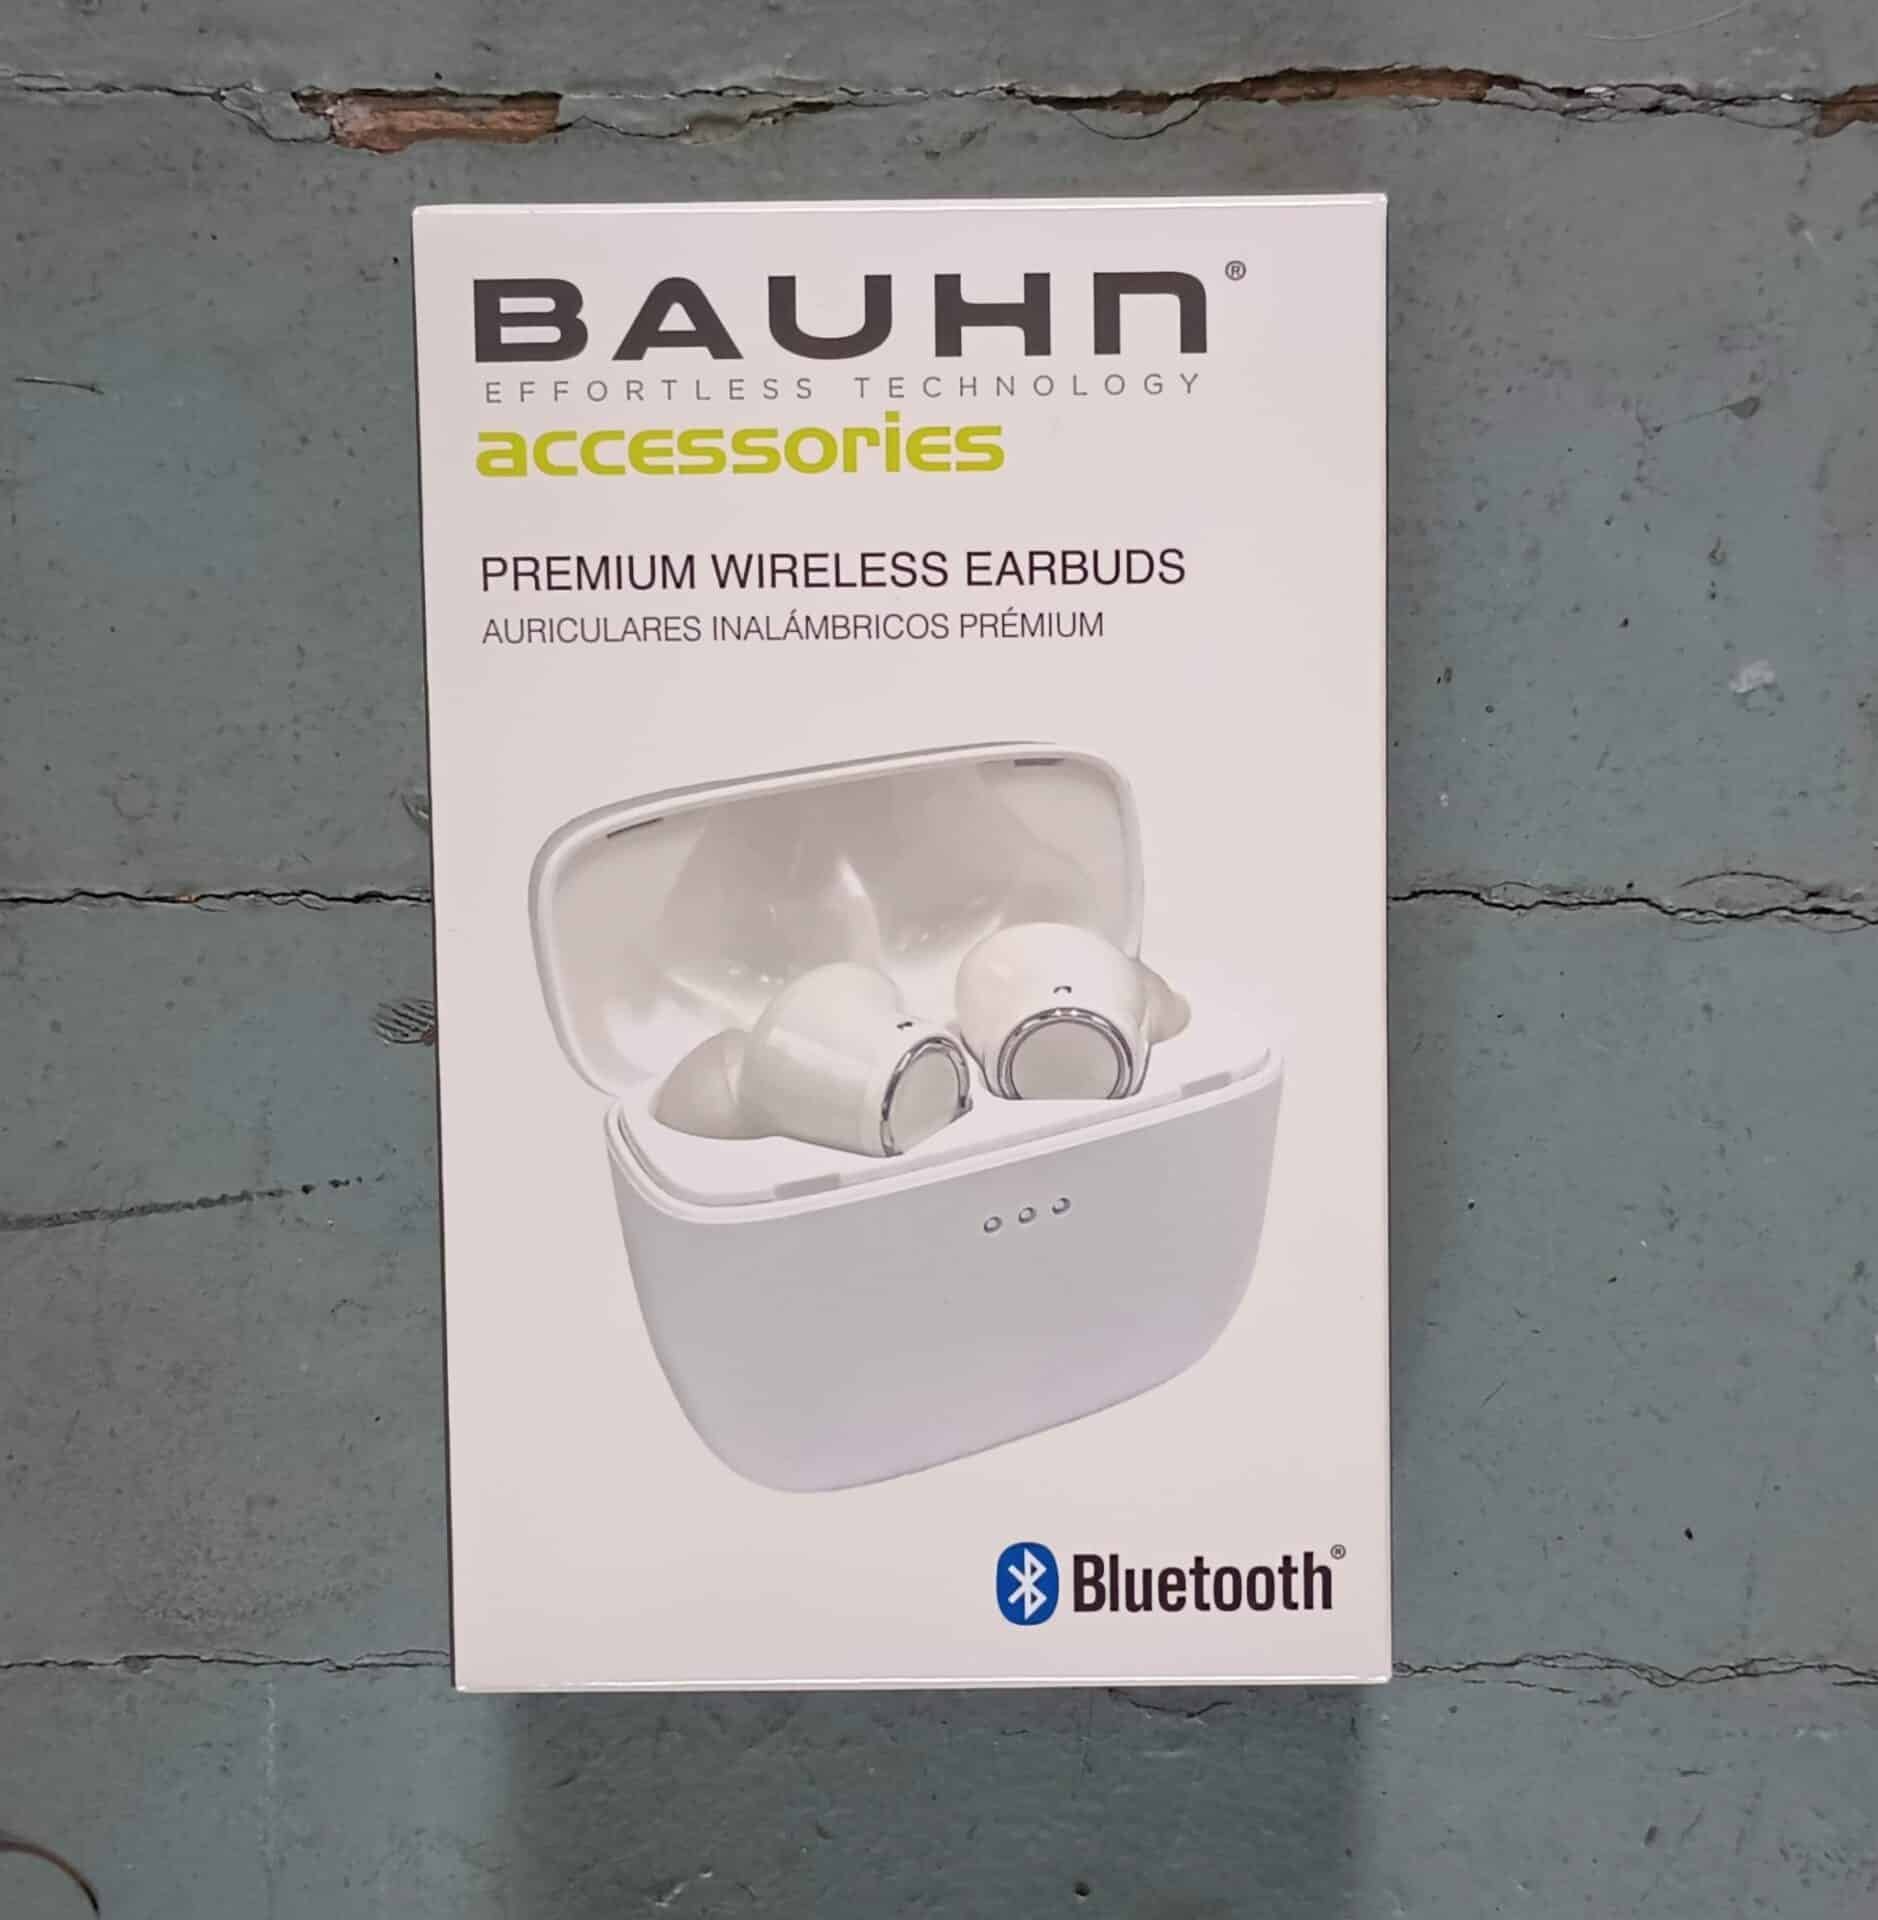 Bauhn Premium Wireless Earbuds